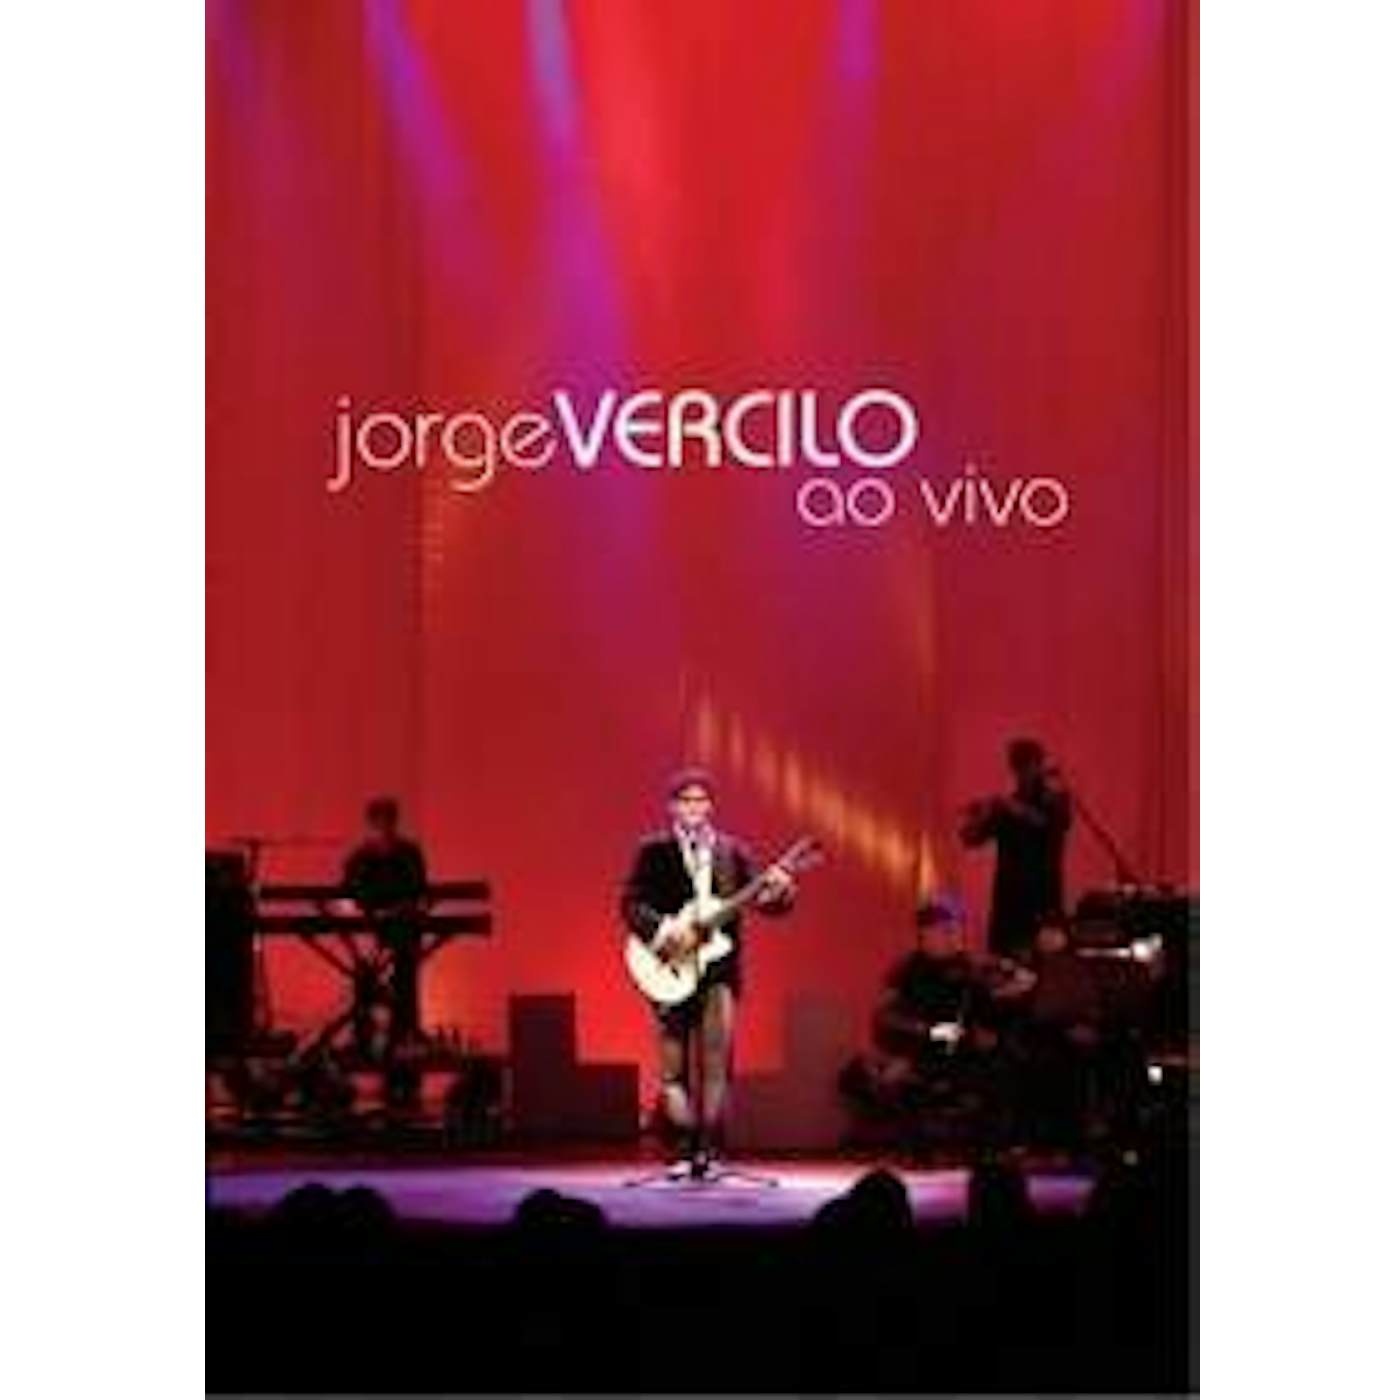 Jorge Vercilo AO VIVO CD